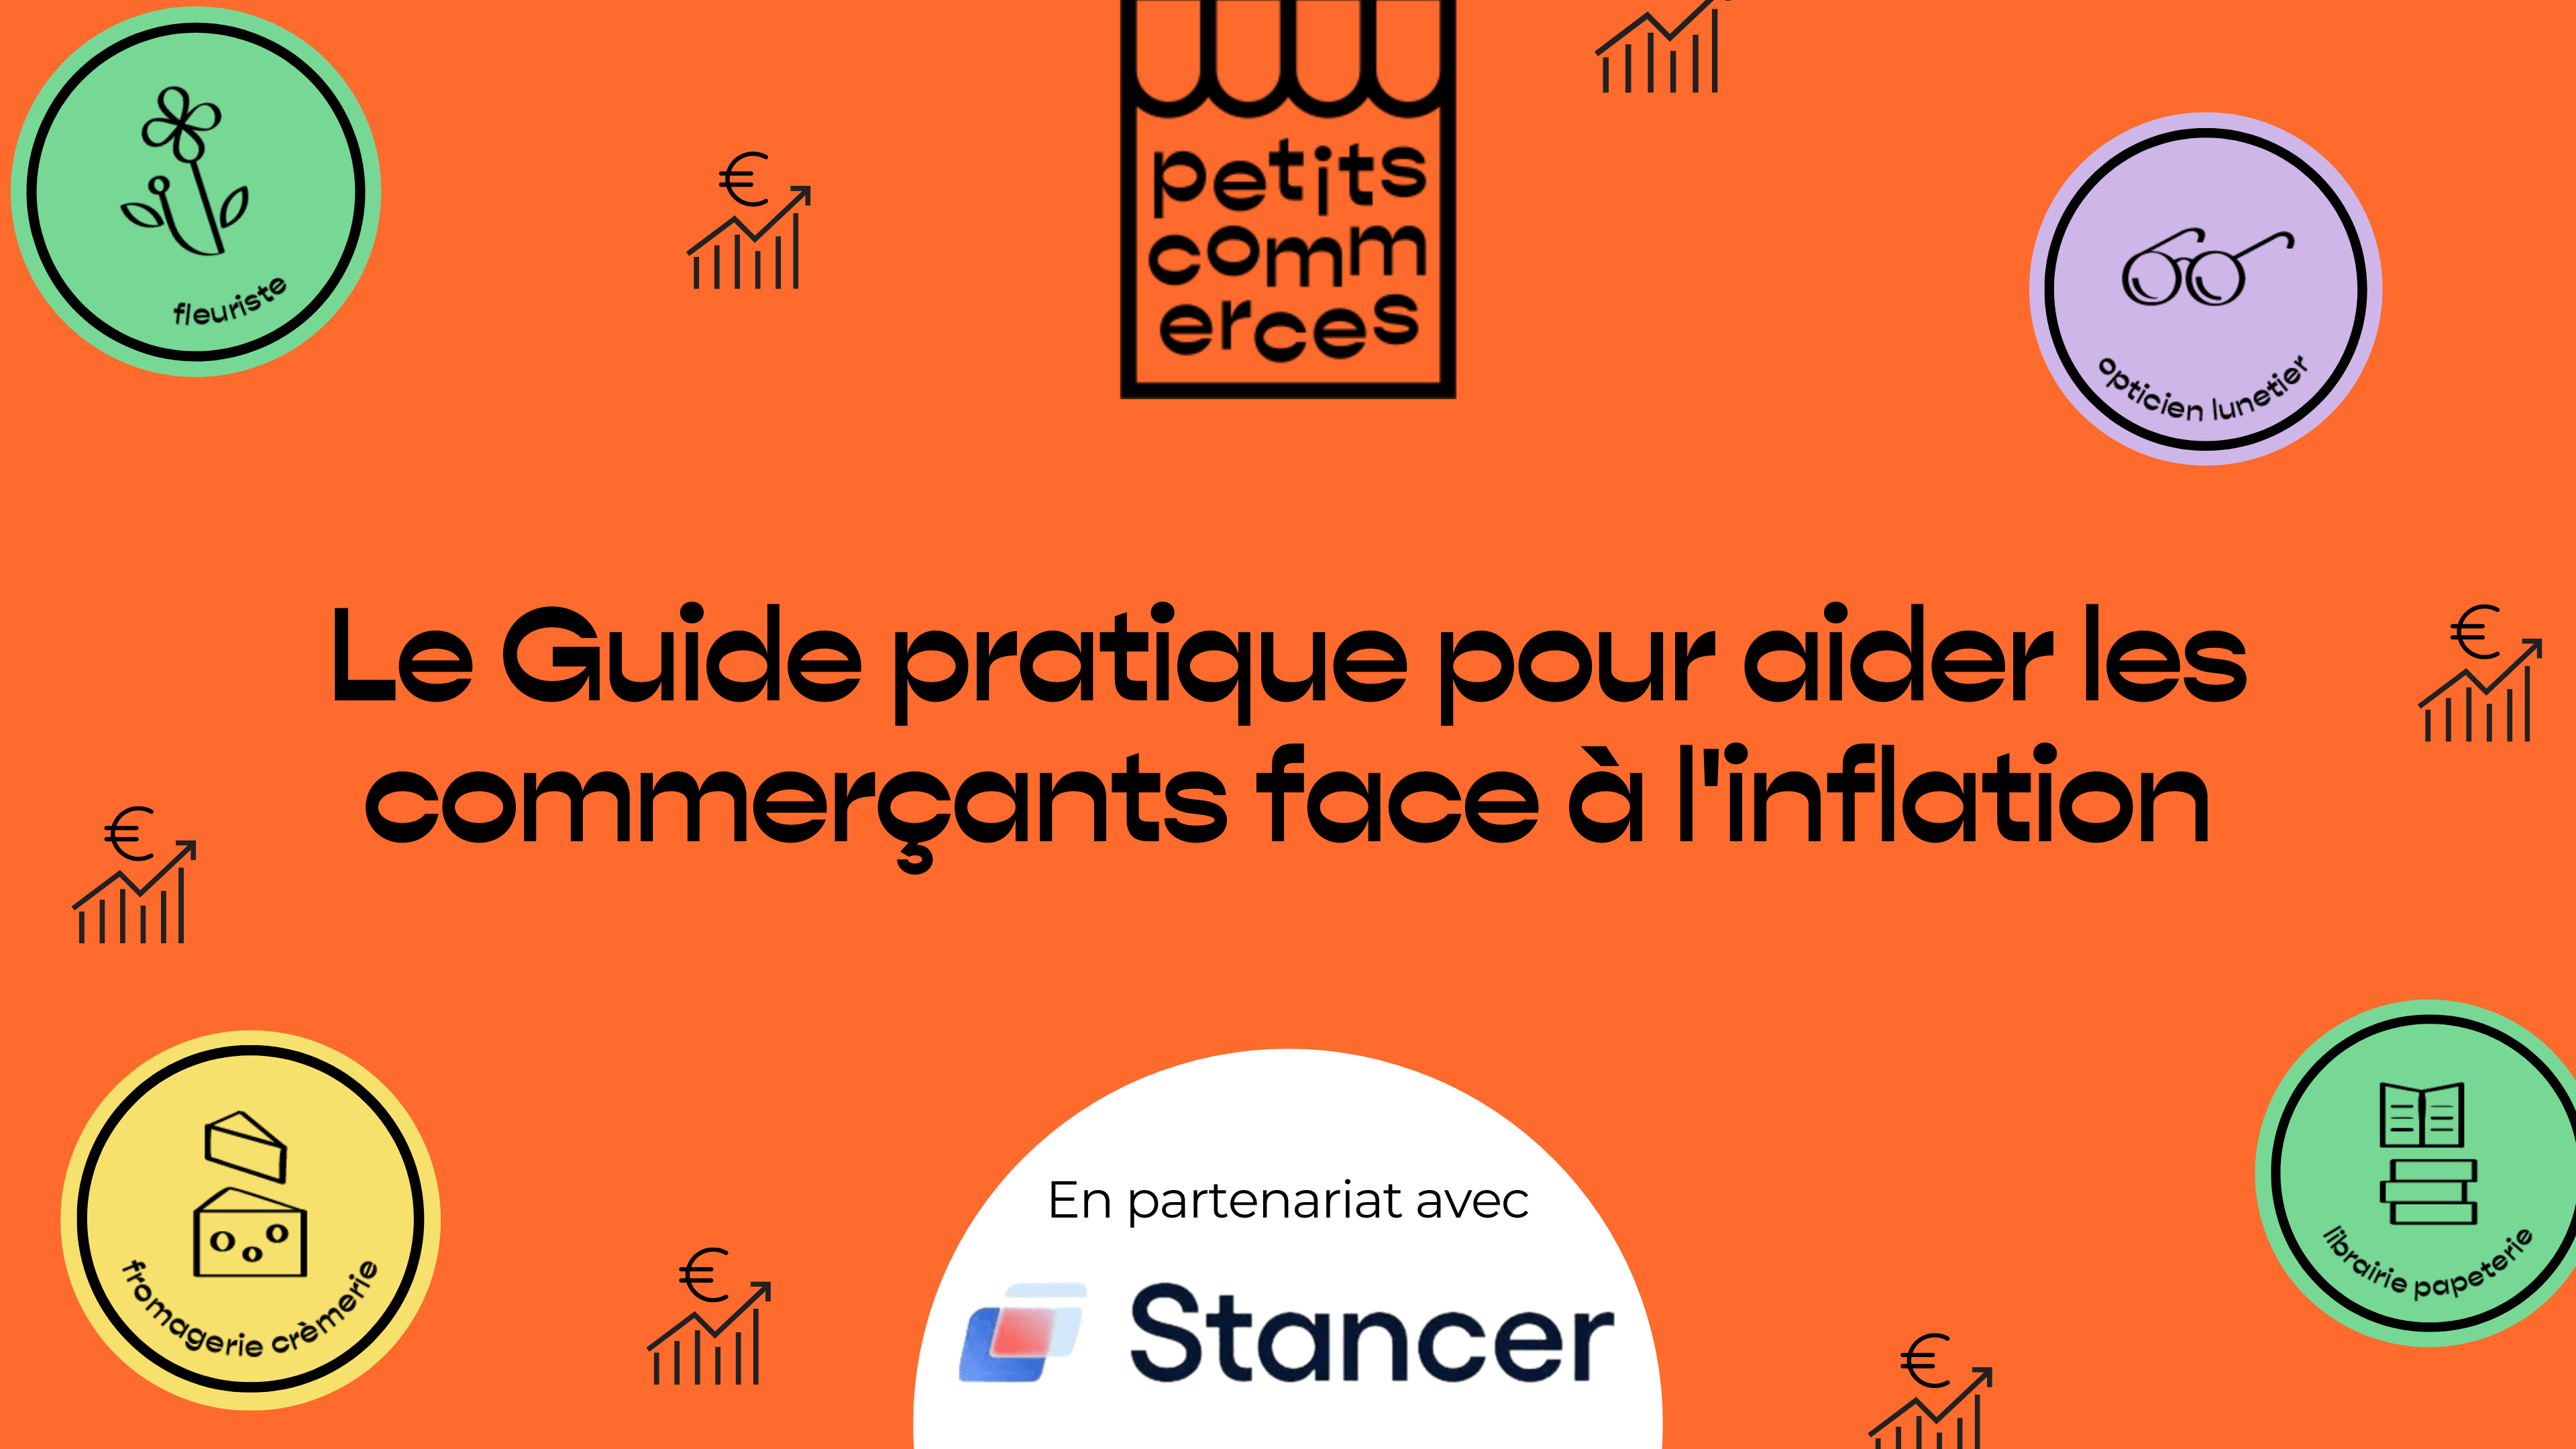 Le-Guide-pratique-pour-aider-les-commercants-face-a-linflation-en-partenariat-avec-Stancer-1